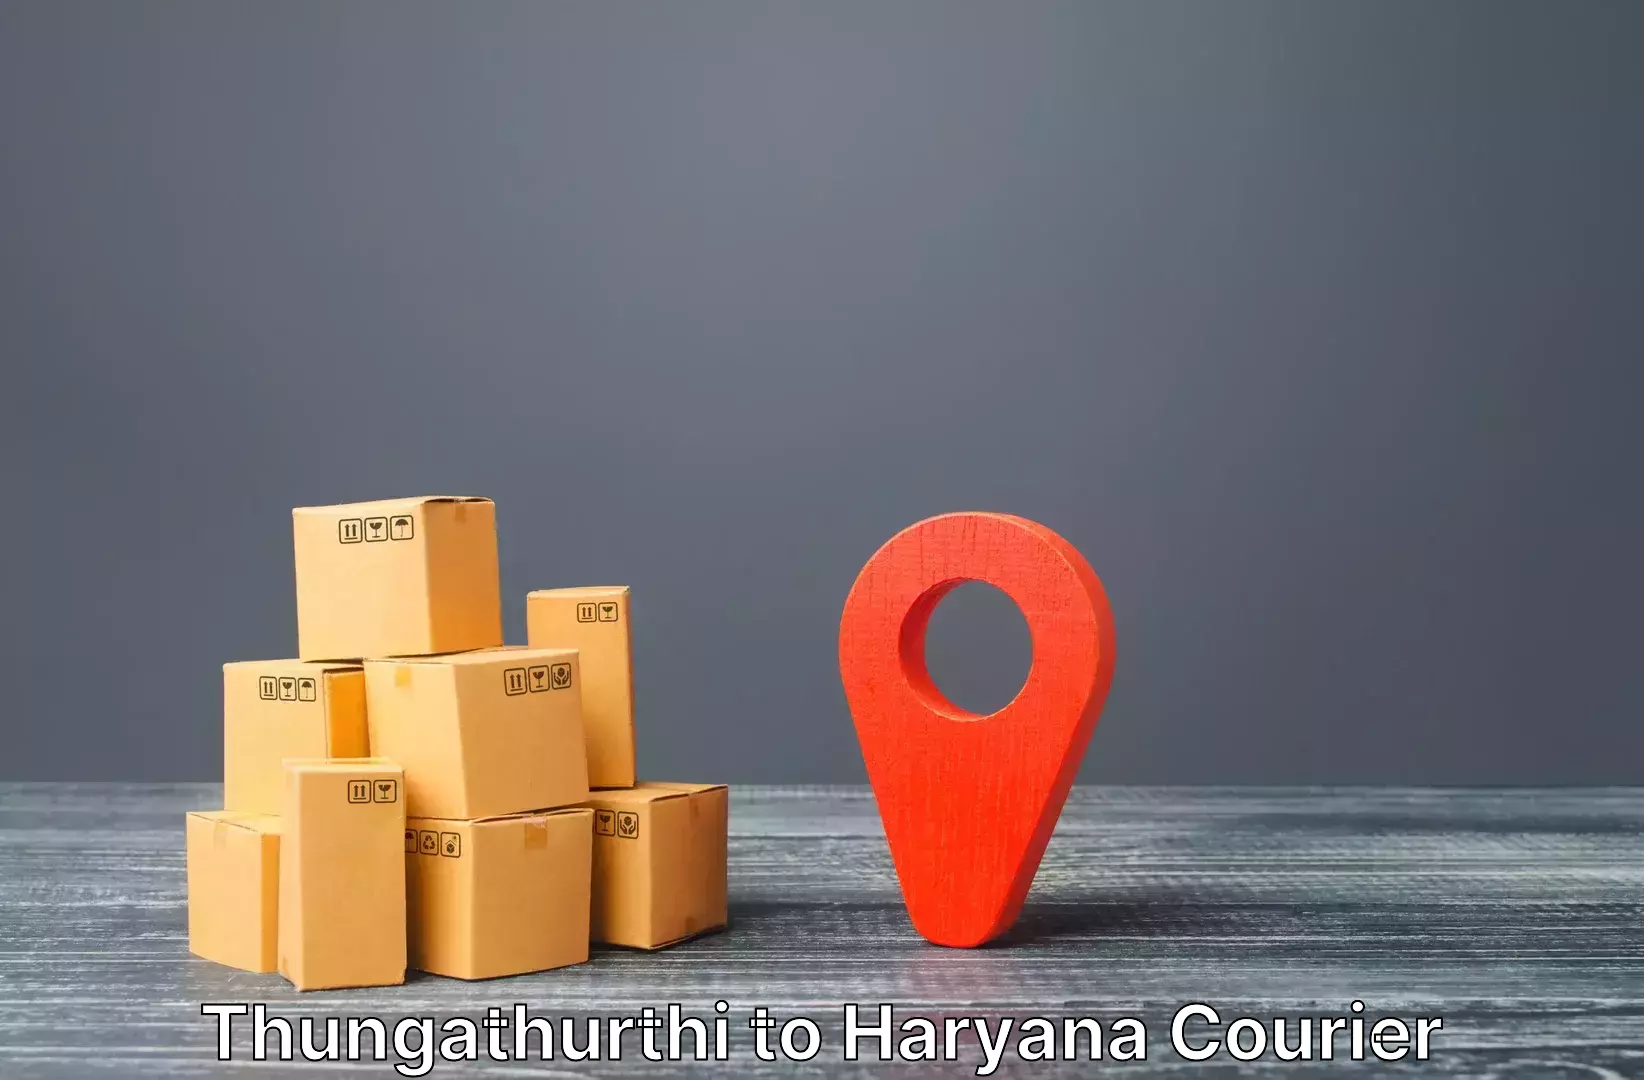 Luggage delivery estimate Thungathurthi to Gurugram